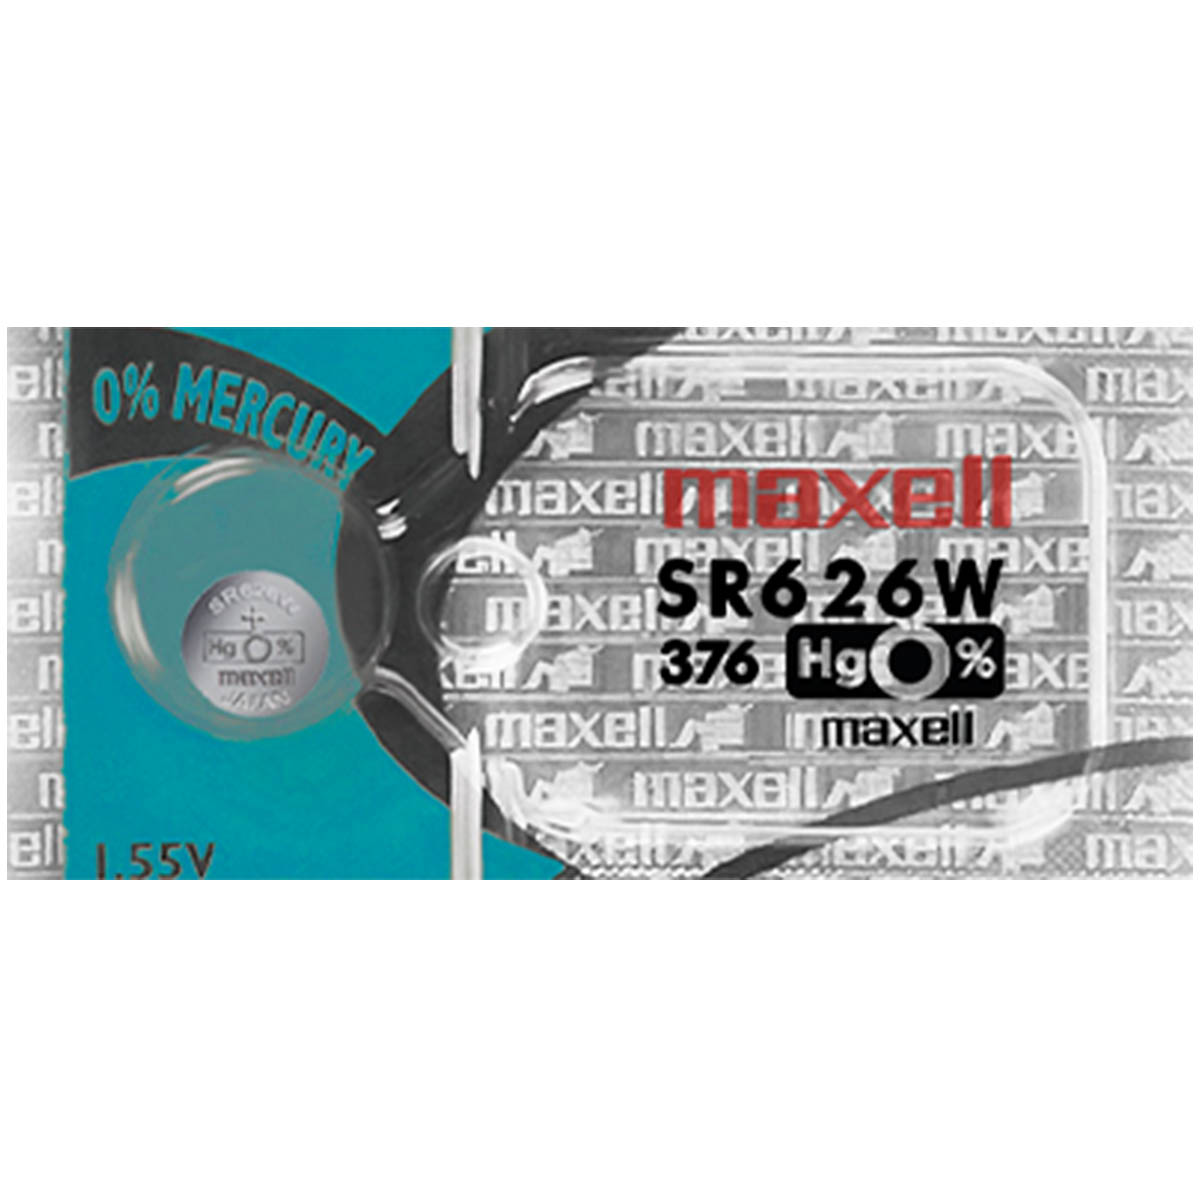 Renata 377 Battery (SR626SW) Silver Oxide 1.55V (1PC)